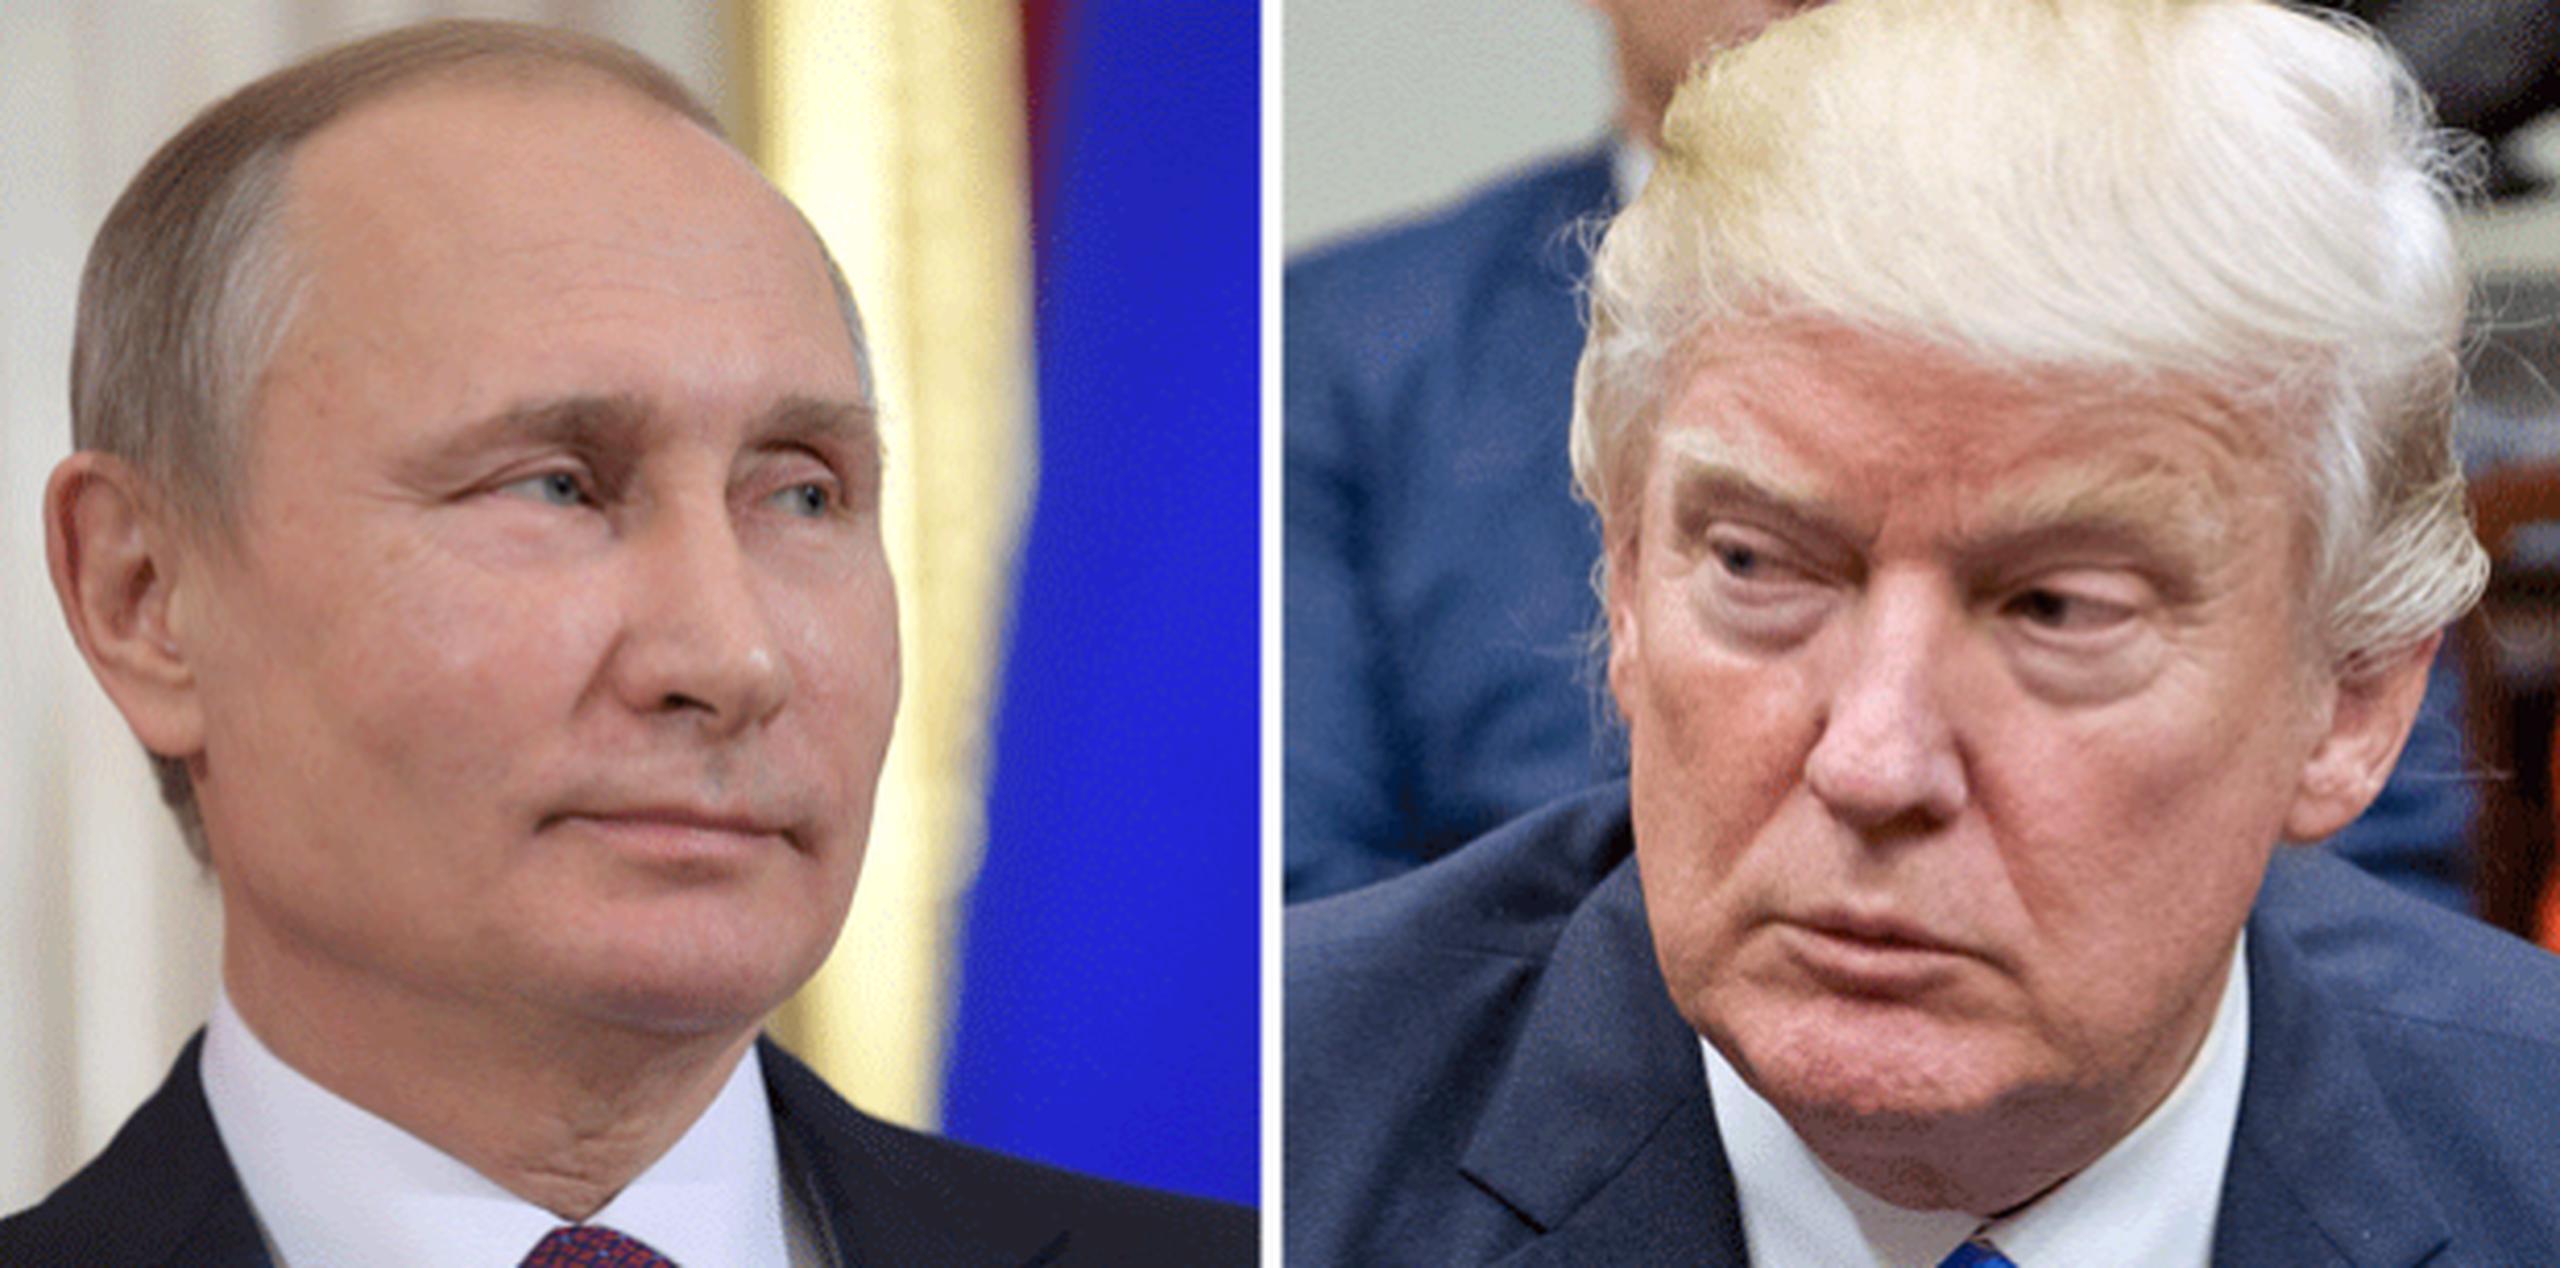 Según Adamishin, Putin (izquierda) debe pedirle a Trump que abandone la política de contención aliada, ya que la expansión de la OTAN es uno de los principales factores de disensión entre ambos países. (Archivo)